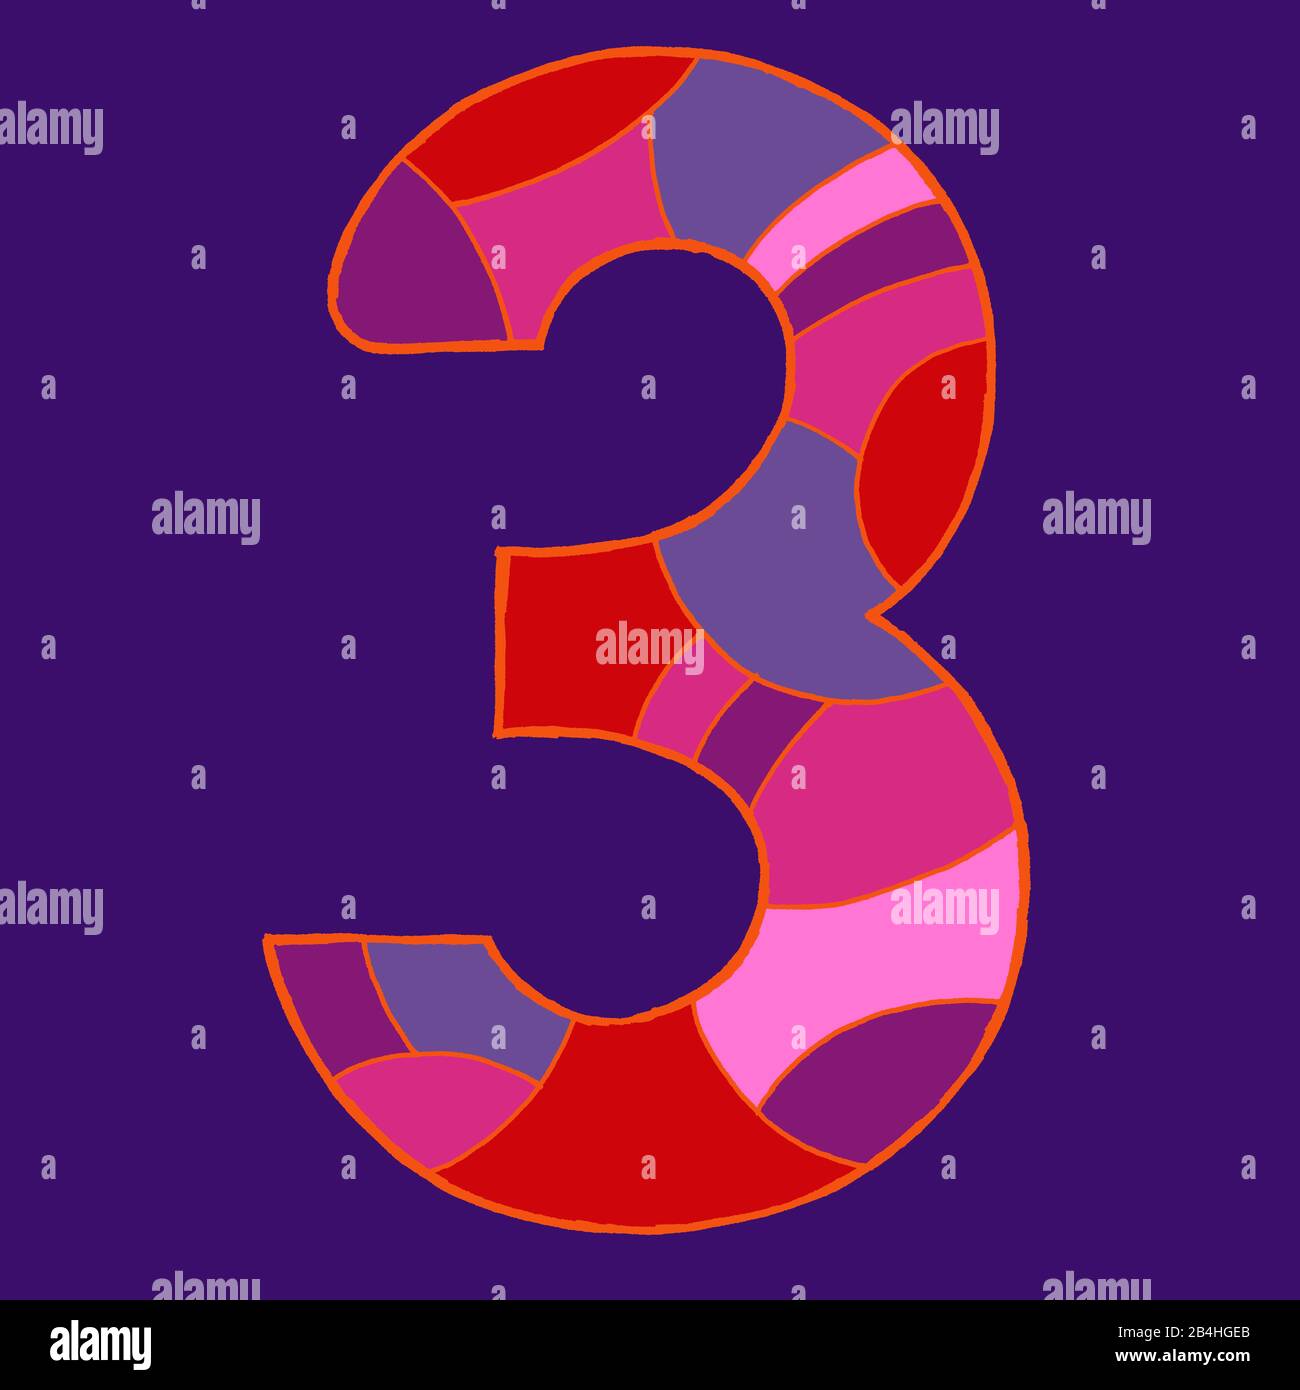 Numéro trois, dessiné comme illustration vectorielle, dans des tons violet-rouge sur un fond violet foncé dans un style pop art Banque D'Images